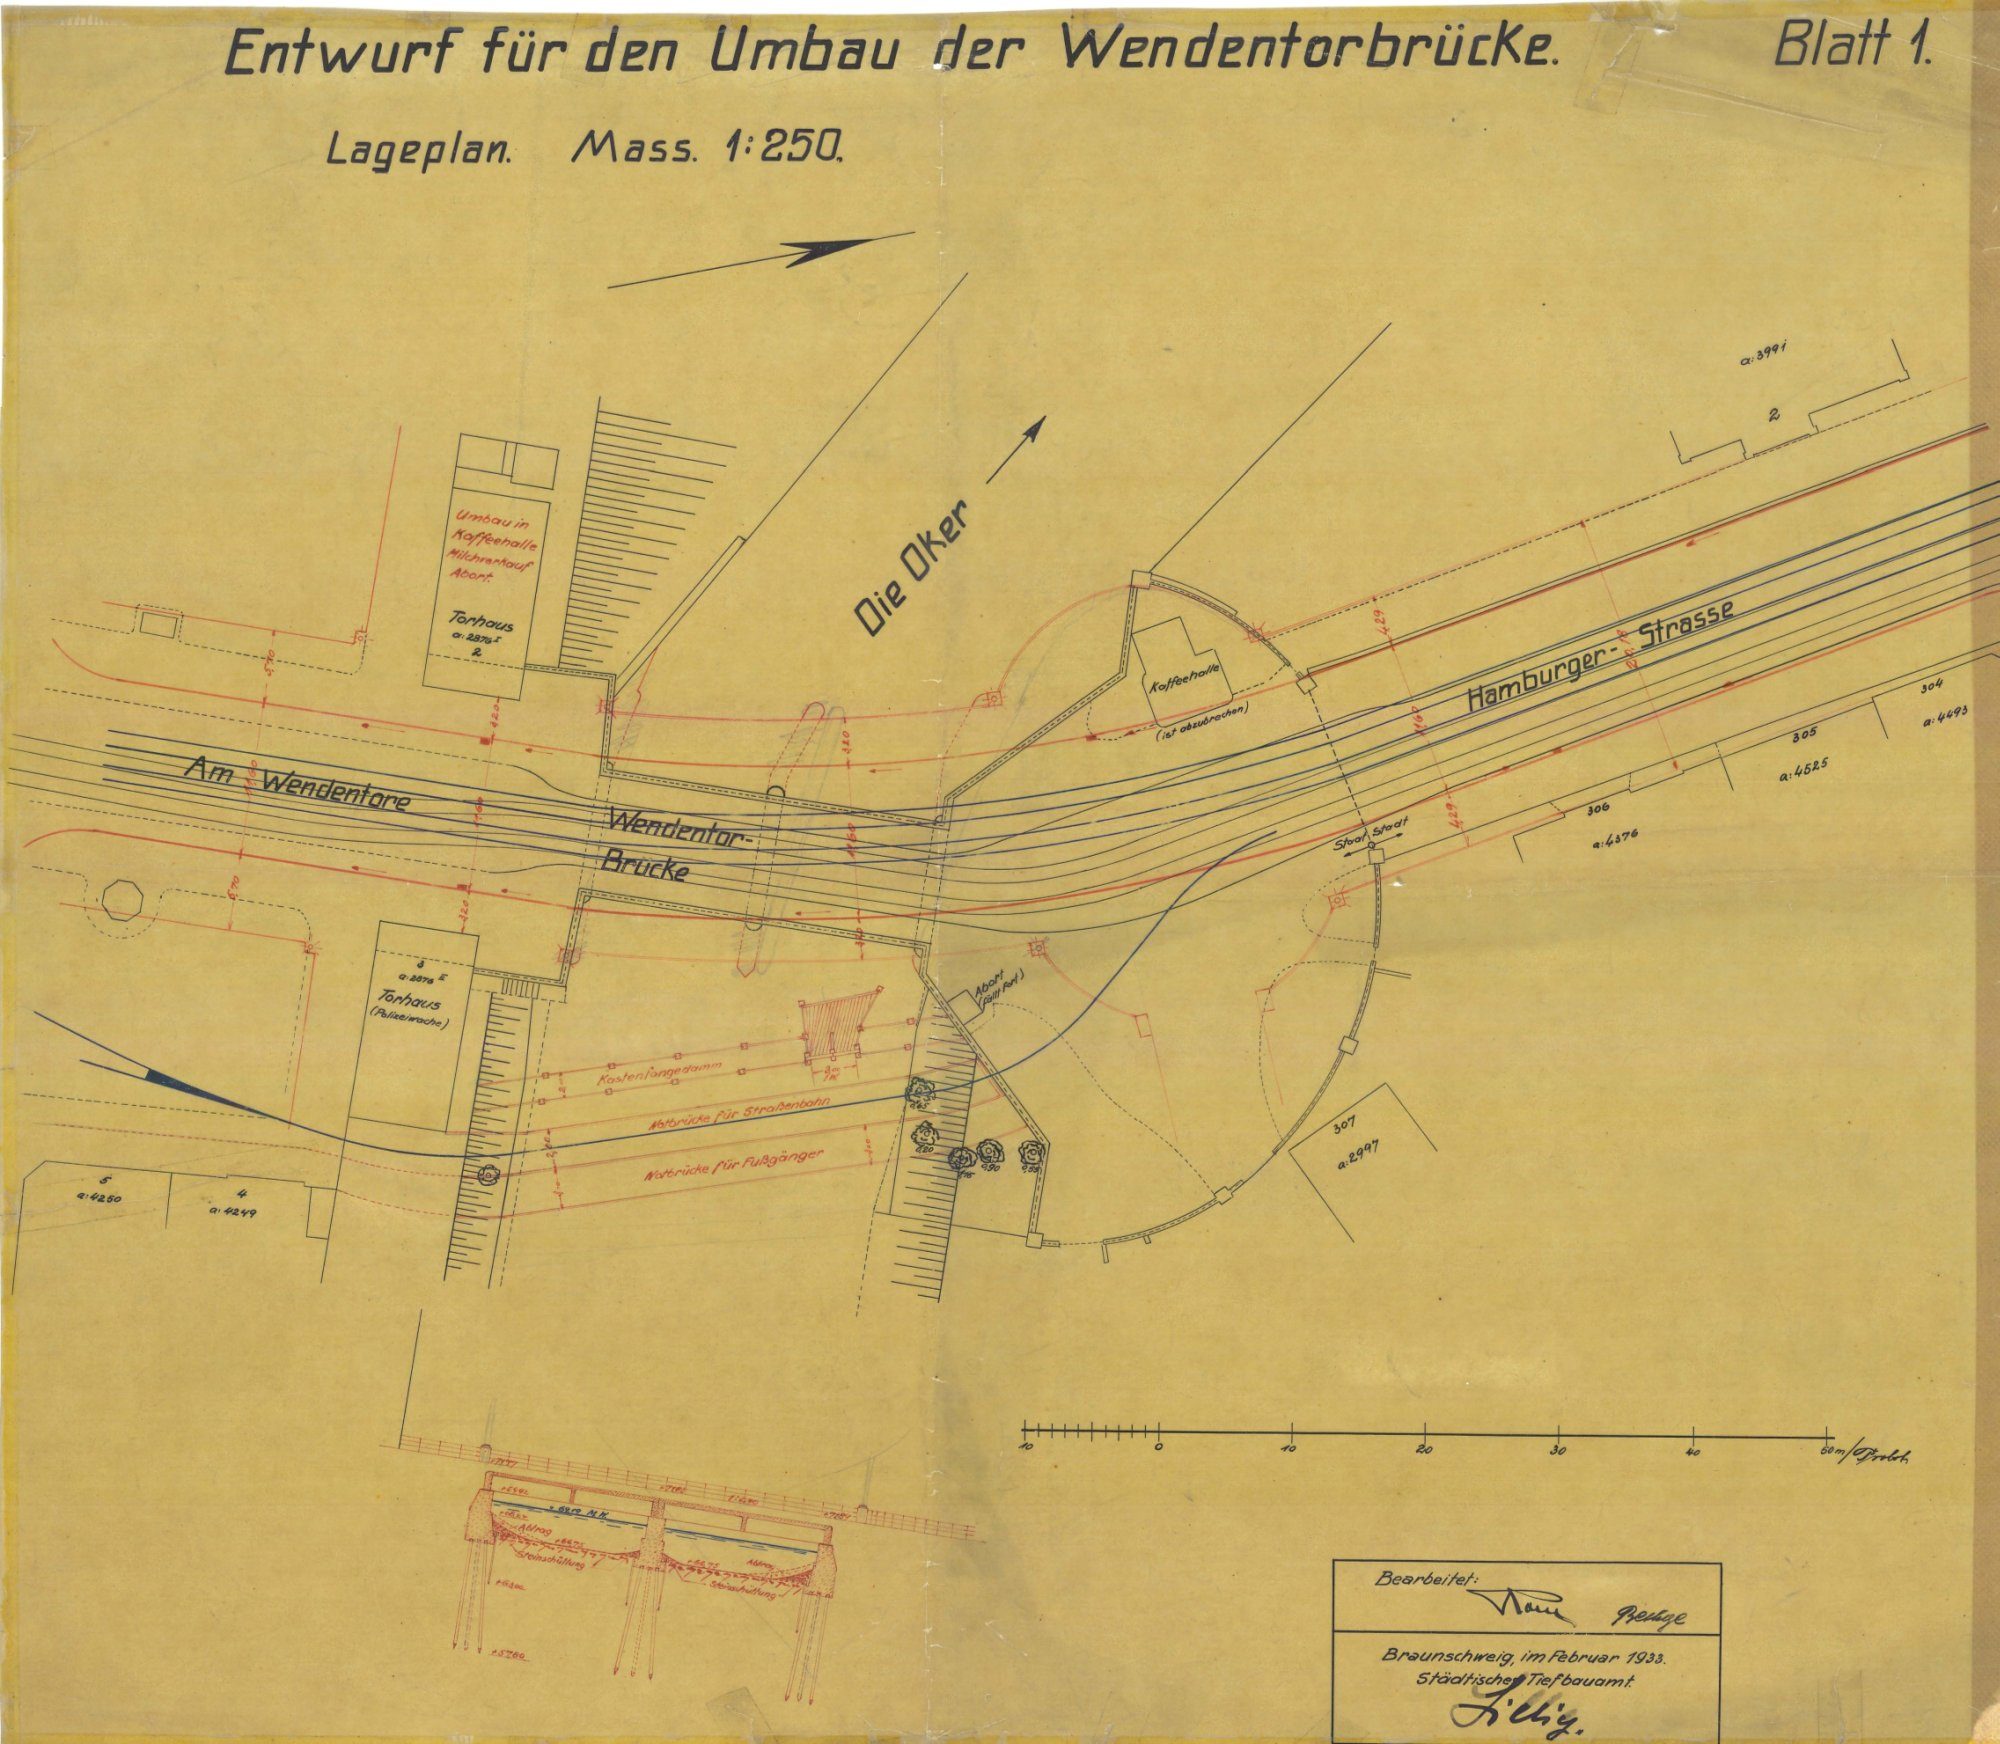 Wendentorbrücke, Lageplan, 1933